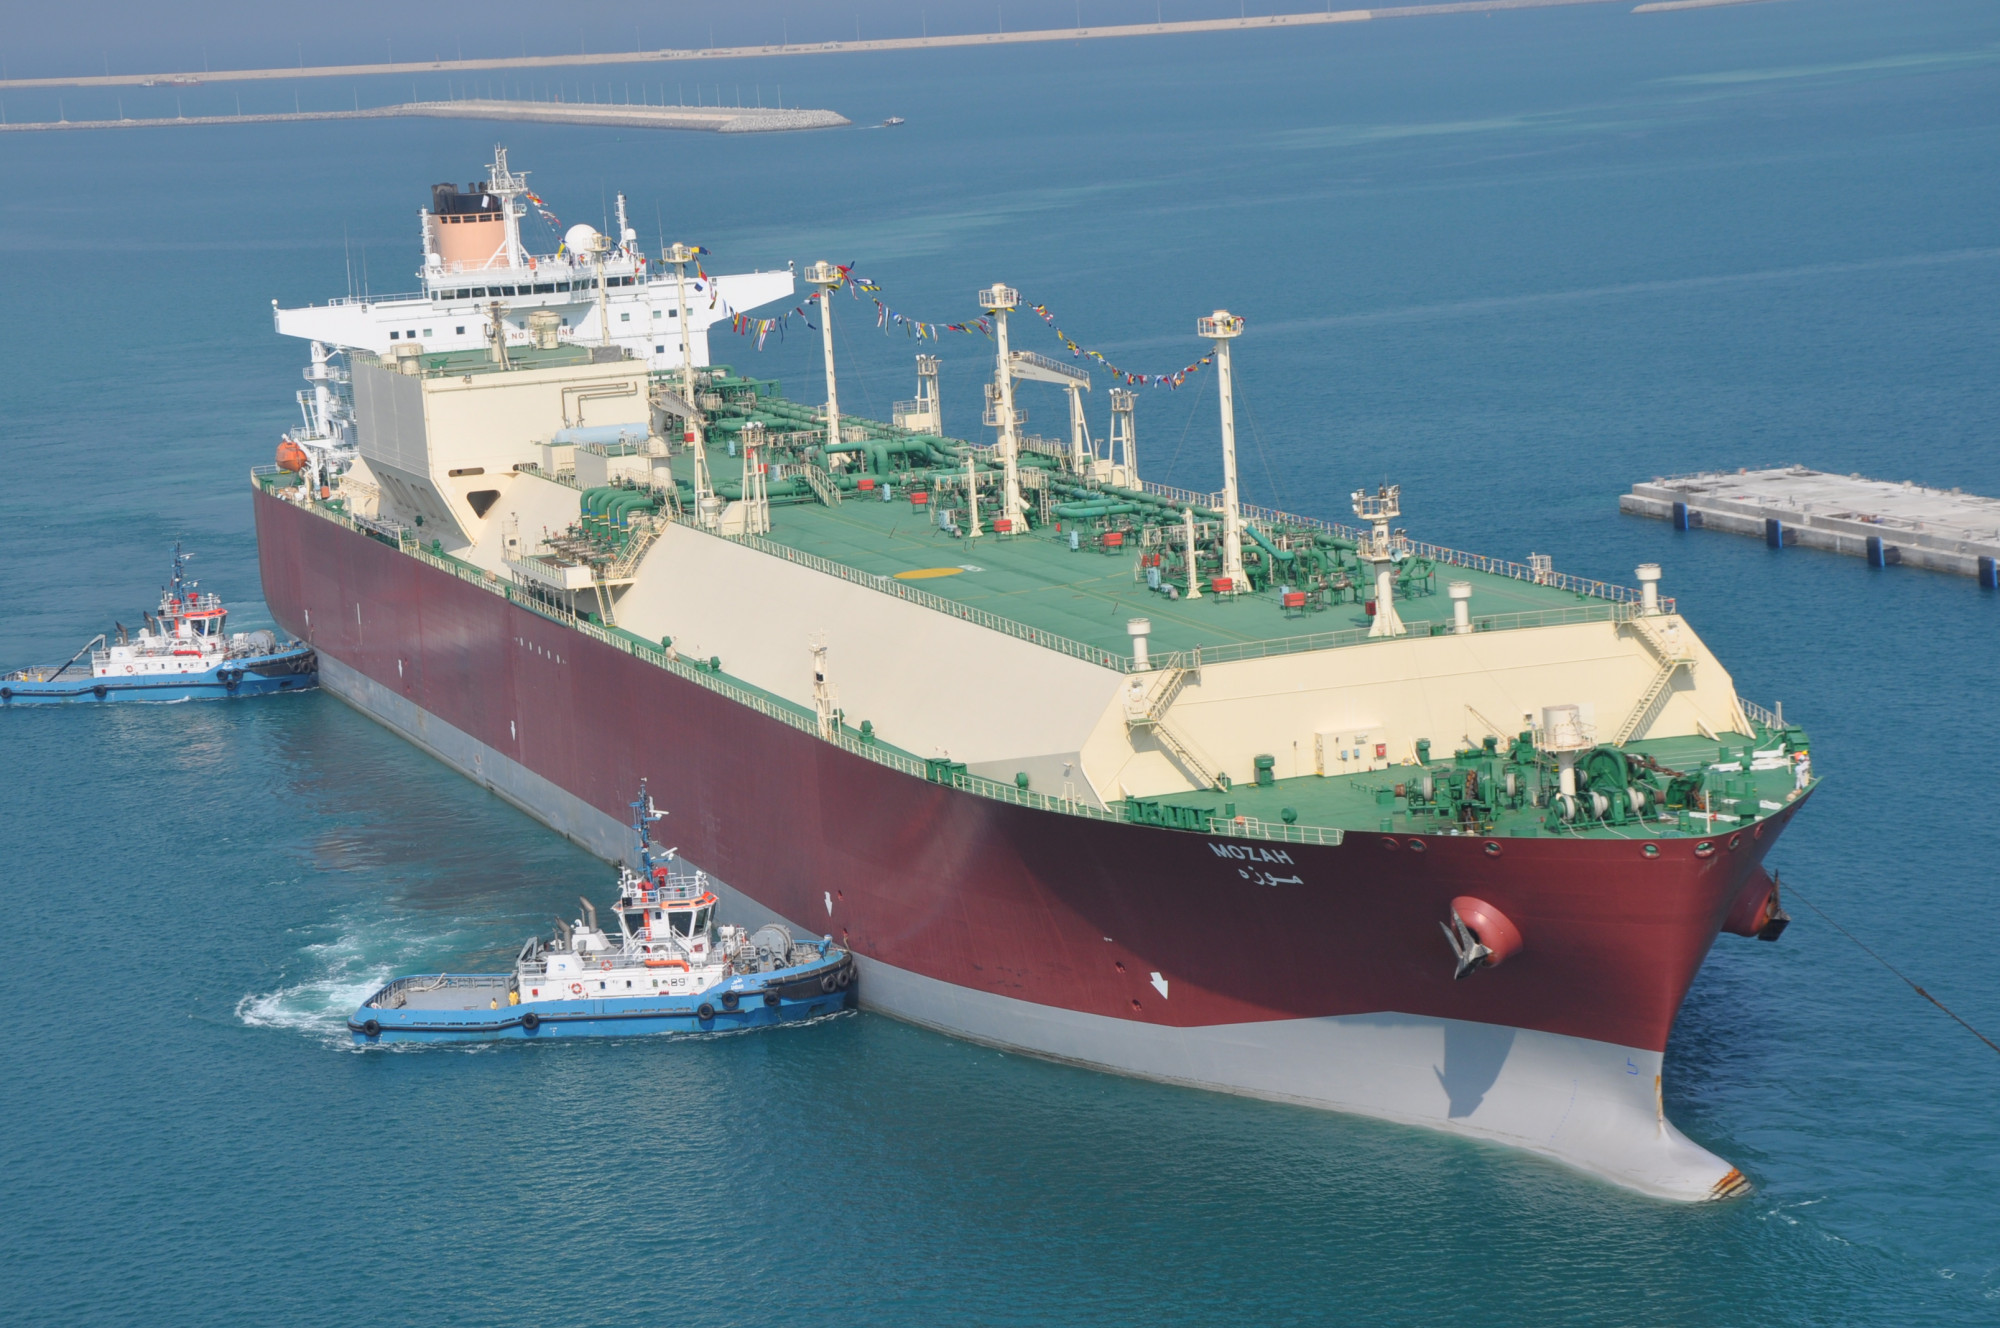 A katari Qatargas II. által üzemeltetett LNG-szállító tanker, a Mozah, amit 2008-ban épített a koreai Samsung Heavy Industries. A hajót az akkori katari emír feleségéről, Moza bint Nasszerről nevezték el.